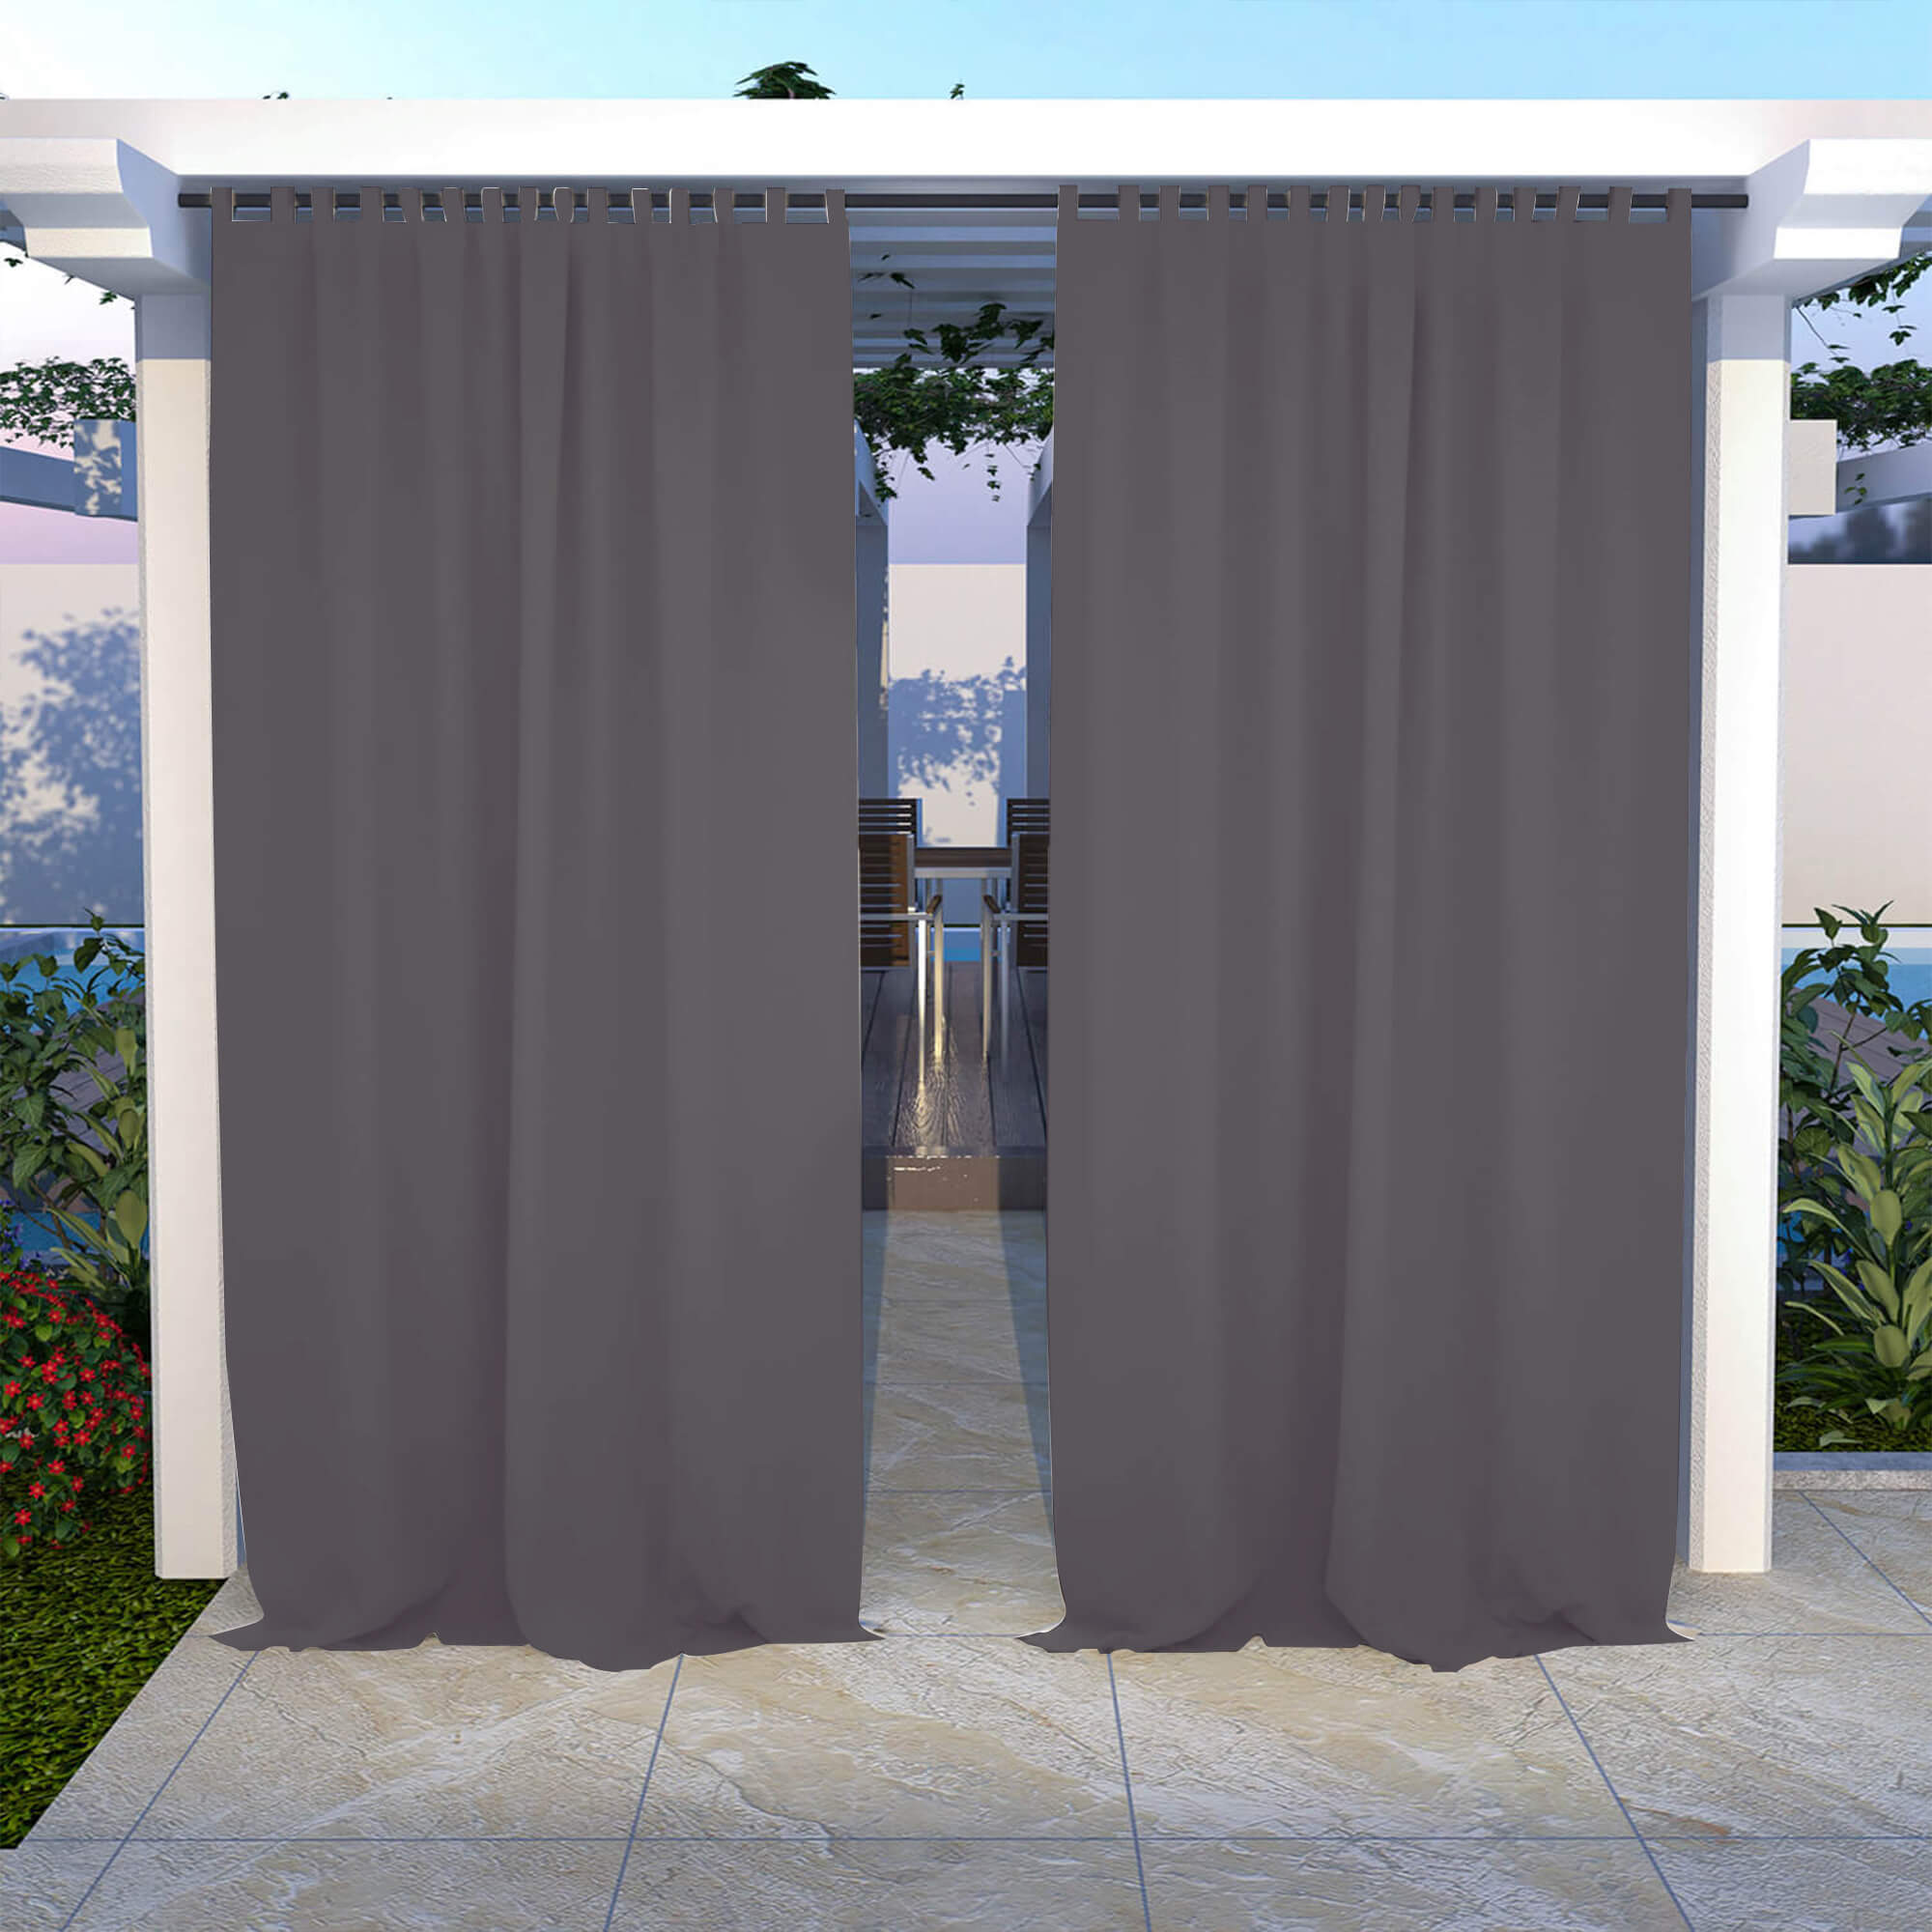 Outdoor Curtains Waterproof Tab Top 1 Panel - Grey